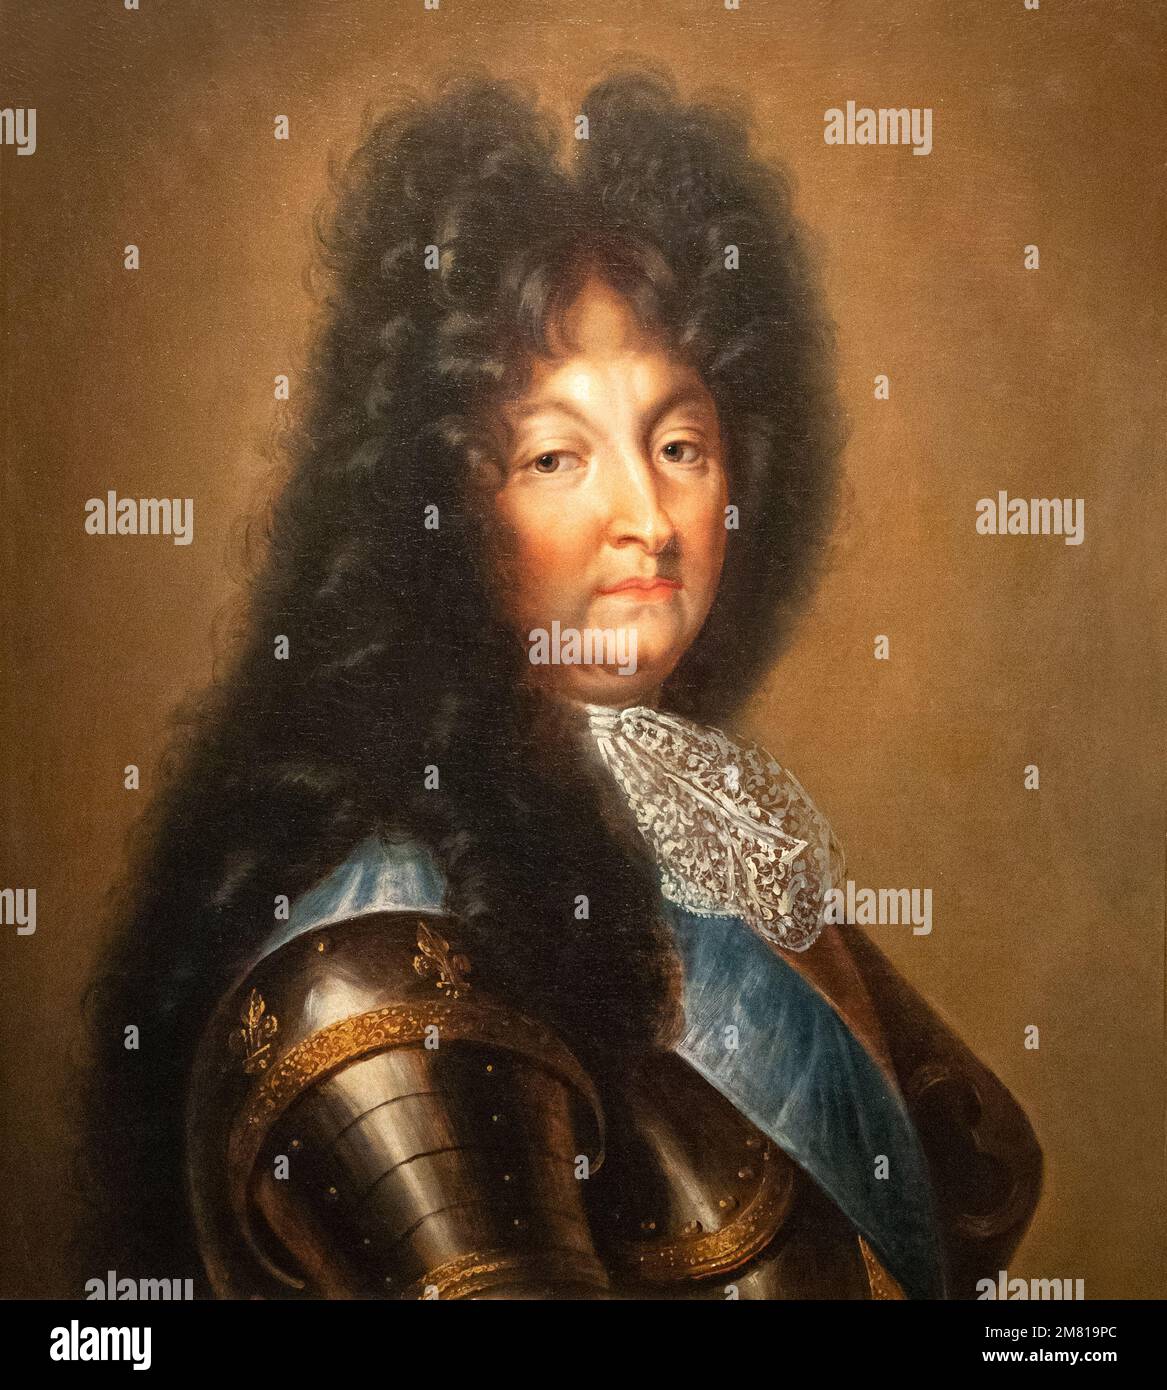 Portrait du roi Louis XIV de France, roi pendant 72 ans de 1643 à 1715. Peinture de Paris après 1694, au Musée du château de Wawel de Cracovie en Pologne Banque D'Images